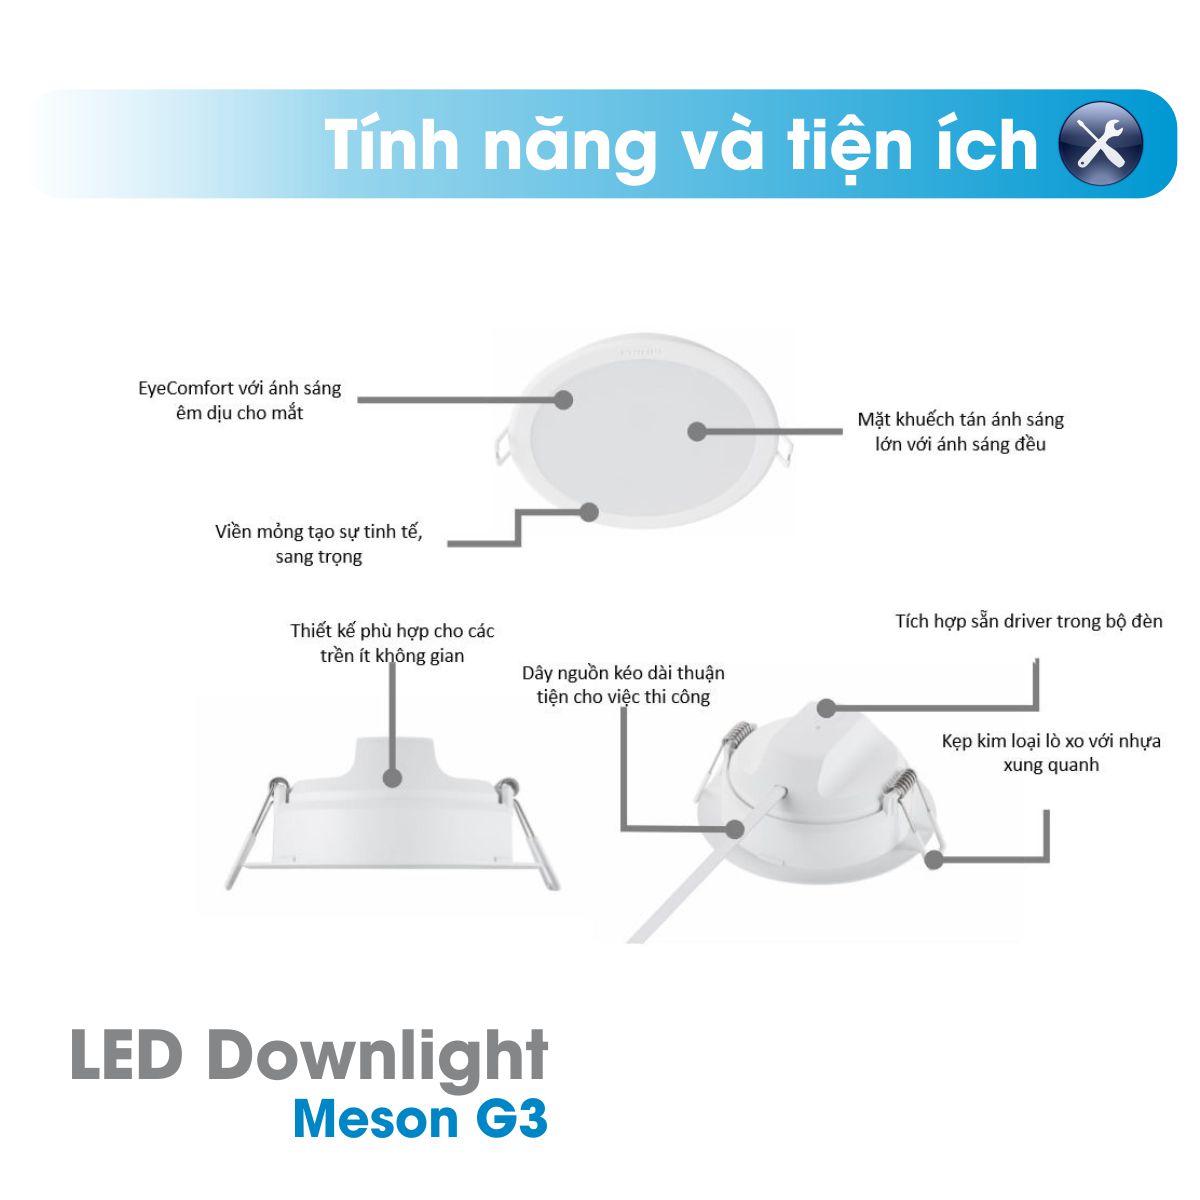 Bộ đèn LED Downlight Meson G3 PHILIPS 220V-240V - Ánh sáng đồng đều, giá cạnh tranh - Hàng Chính Hãng